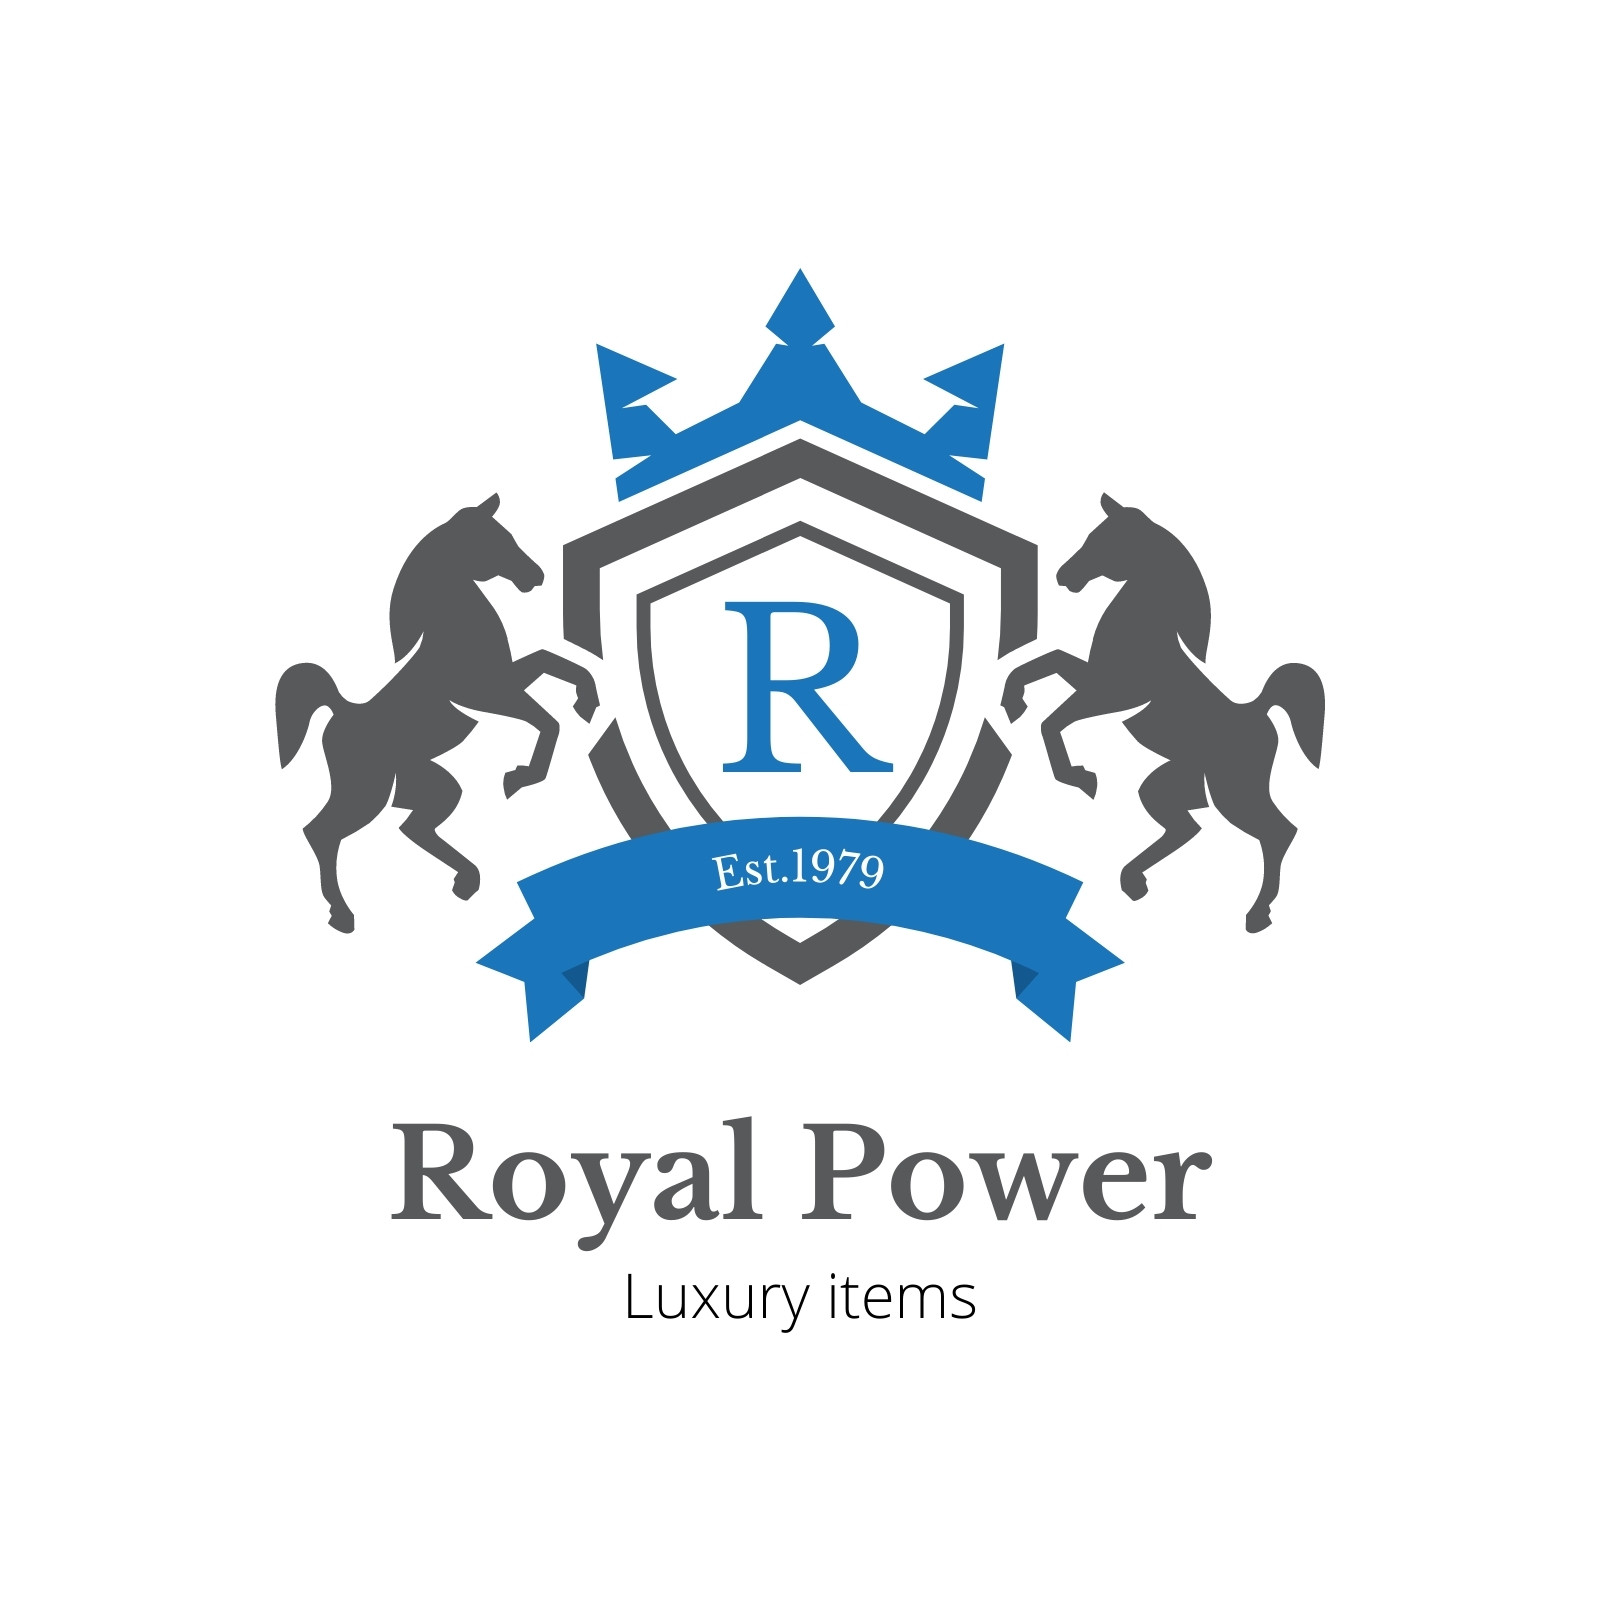 Royal logo Royalty Free Vector Image - VectorStock, royal